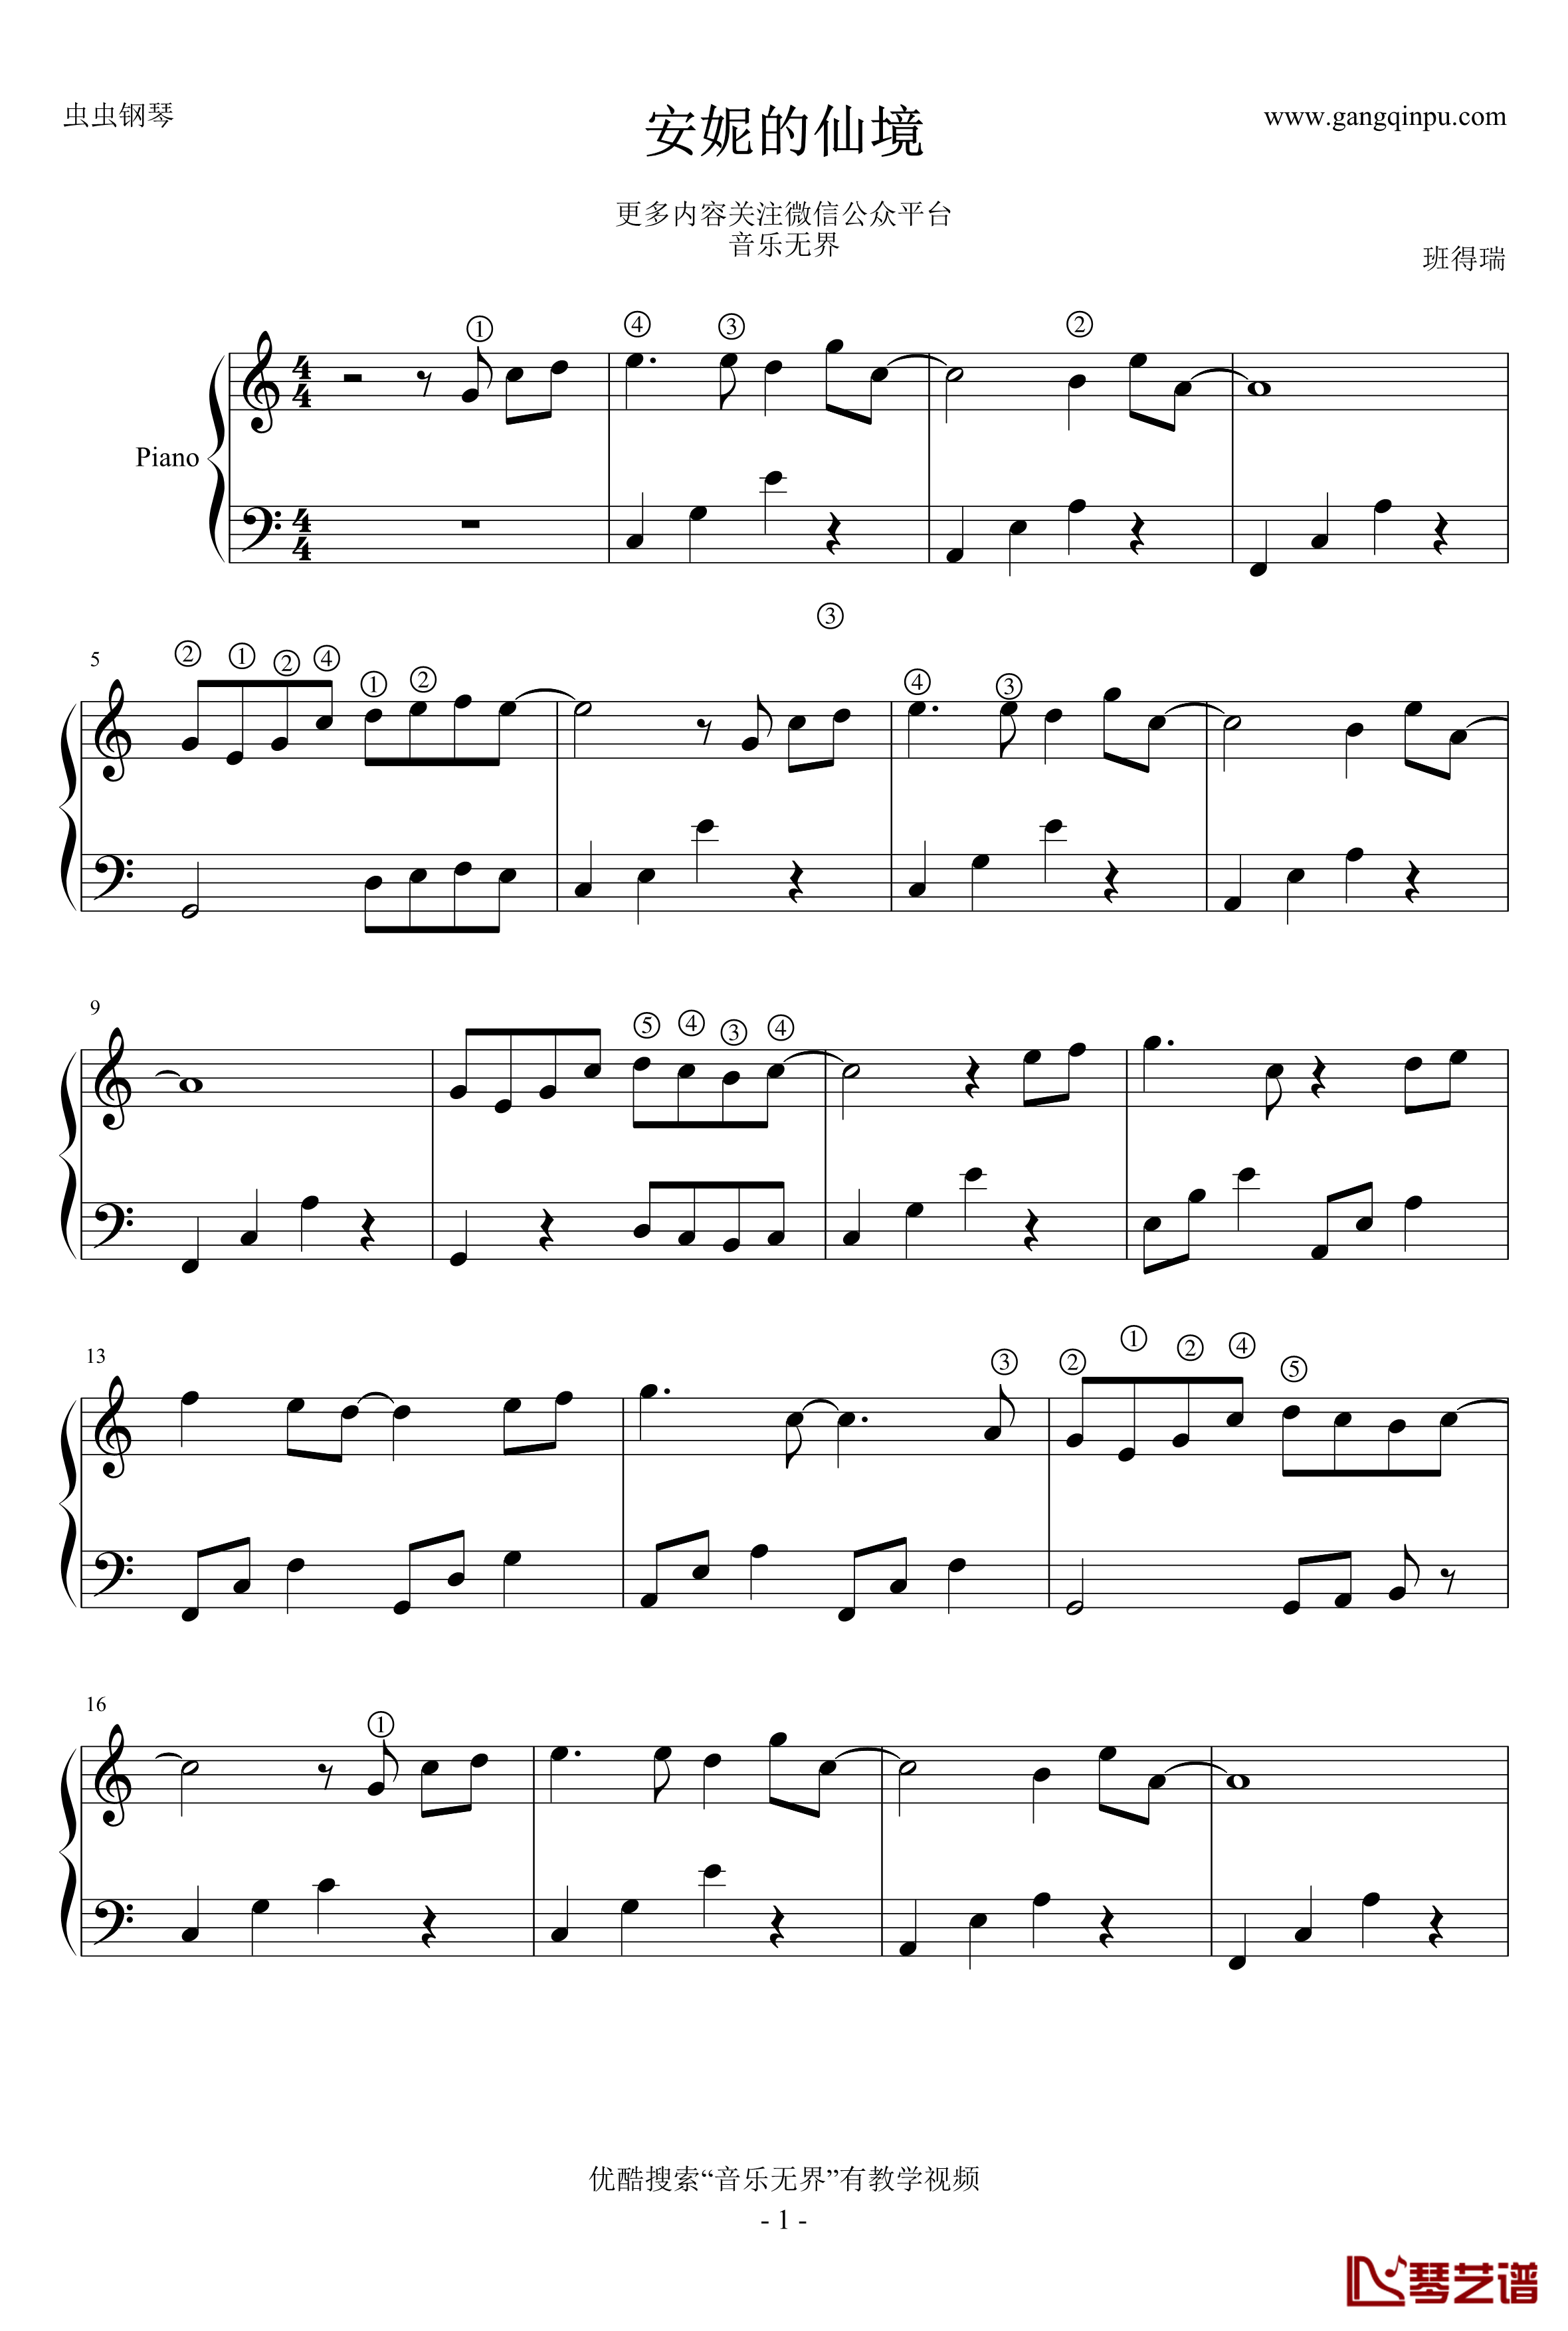 安妮的仙境钢琴谱-无升降号简版-班得瑞-Bandar